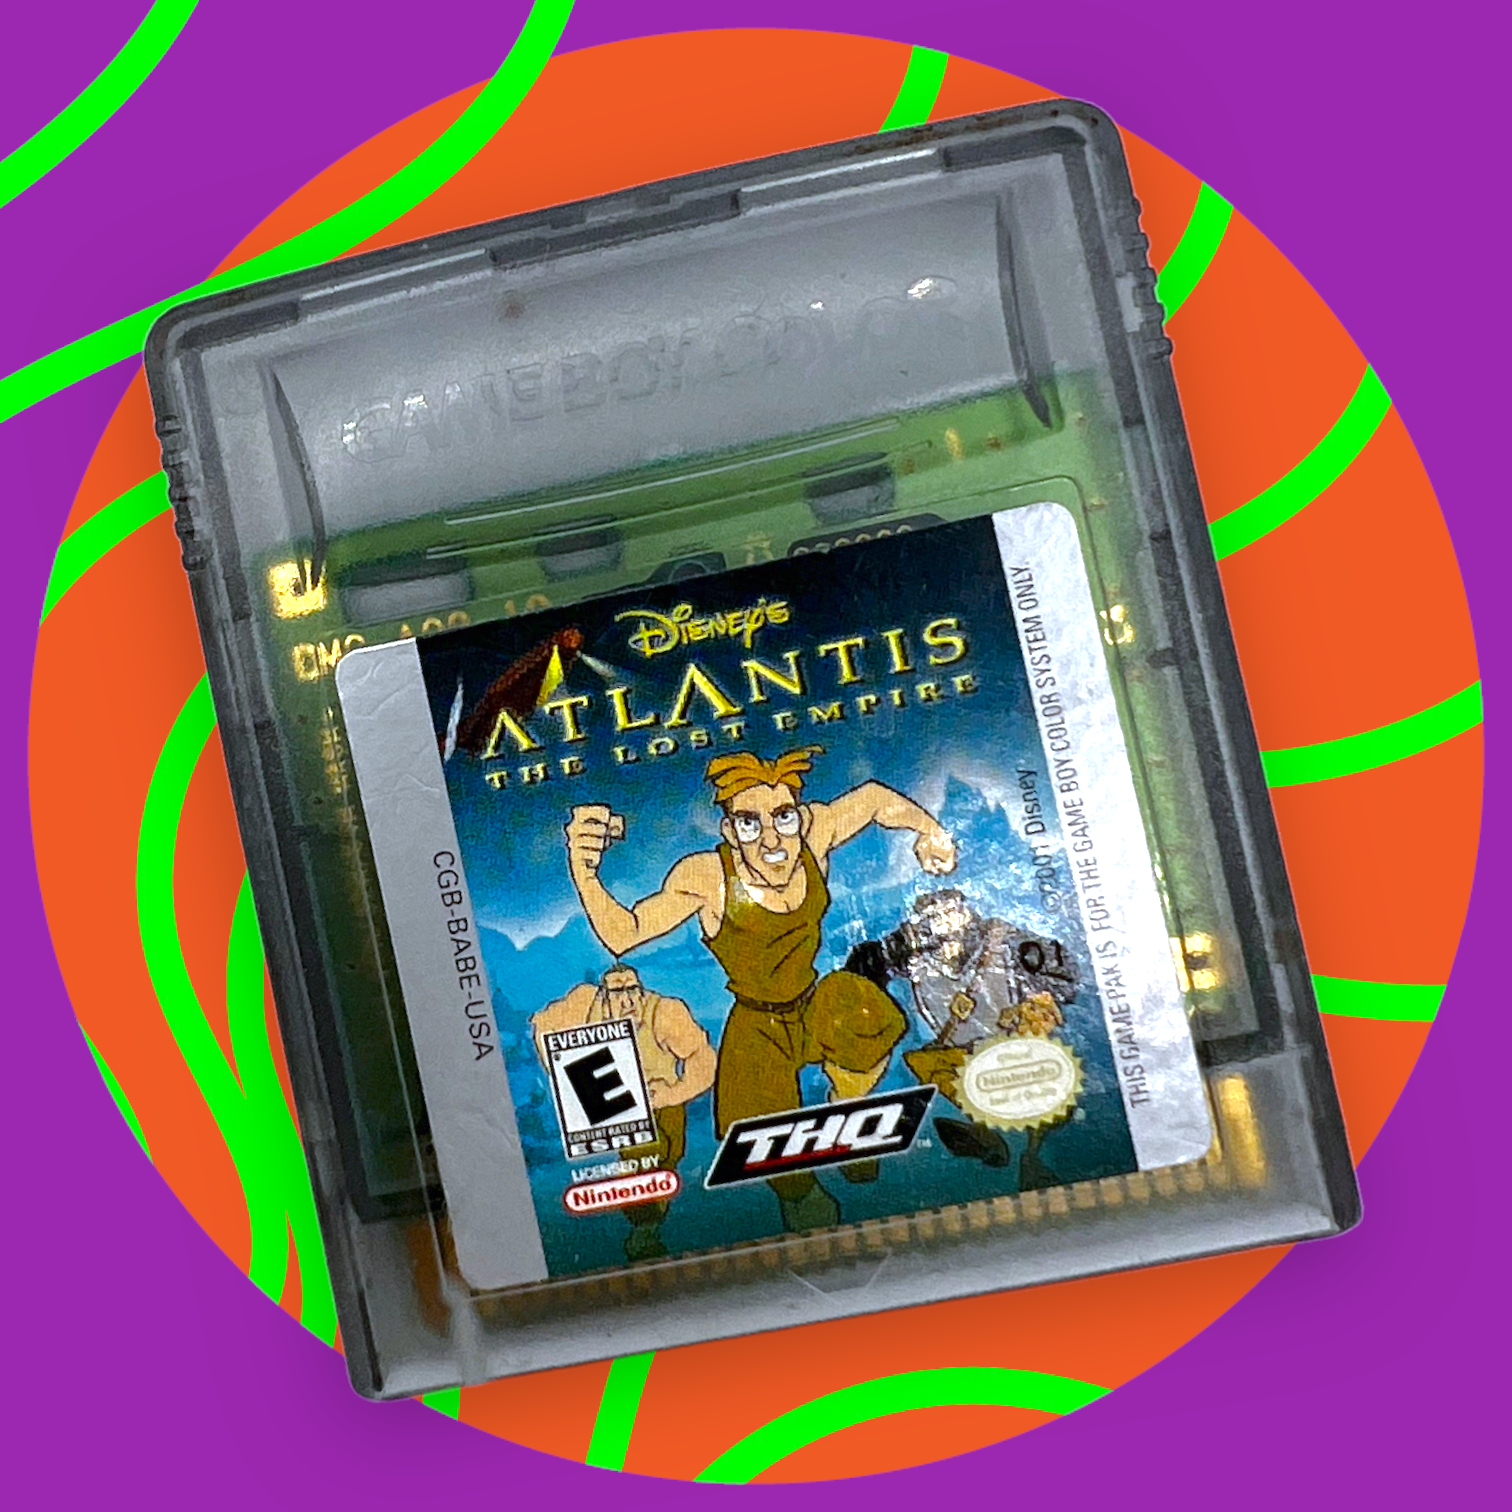 Atlantis The Empire (Nintendo Game Color, 2001) – The Nostalgia Den